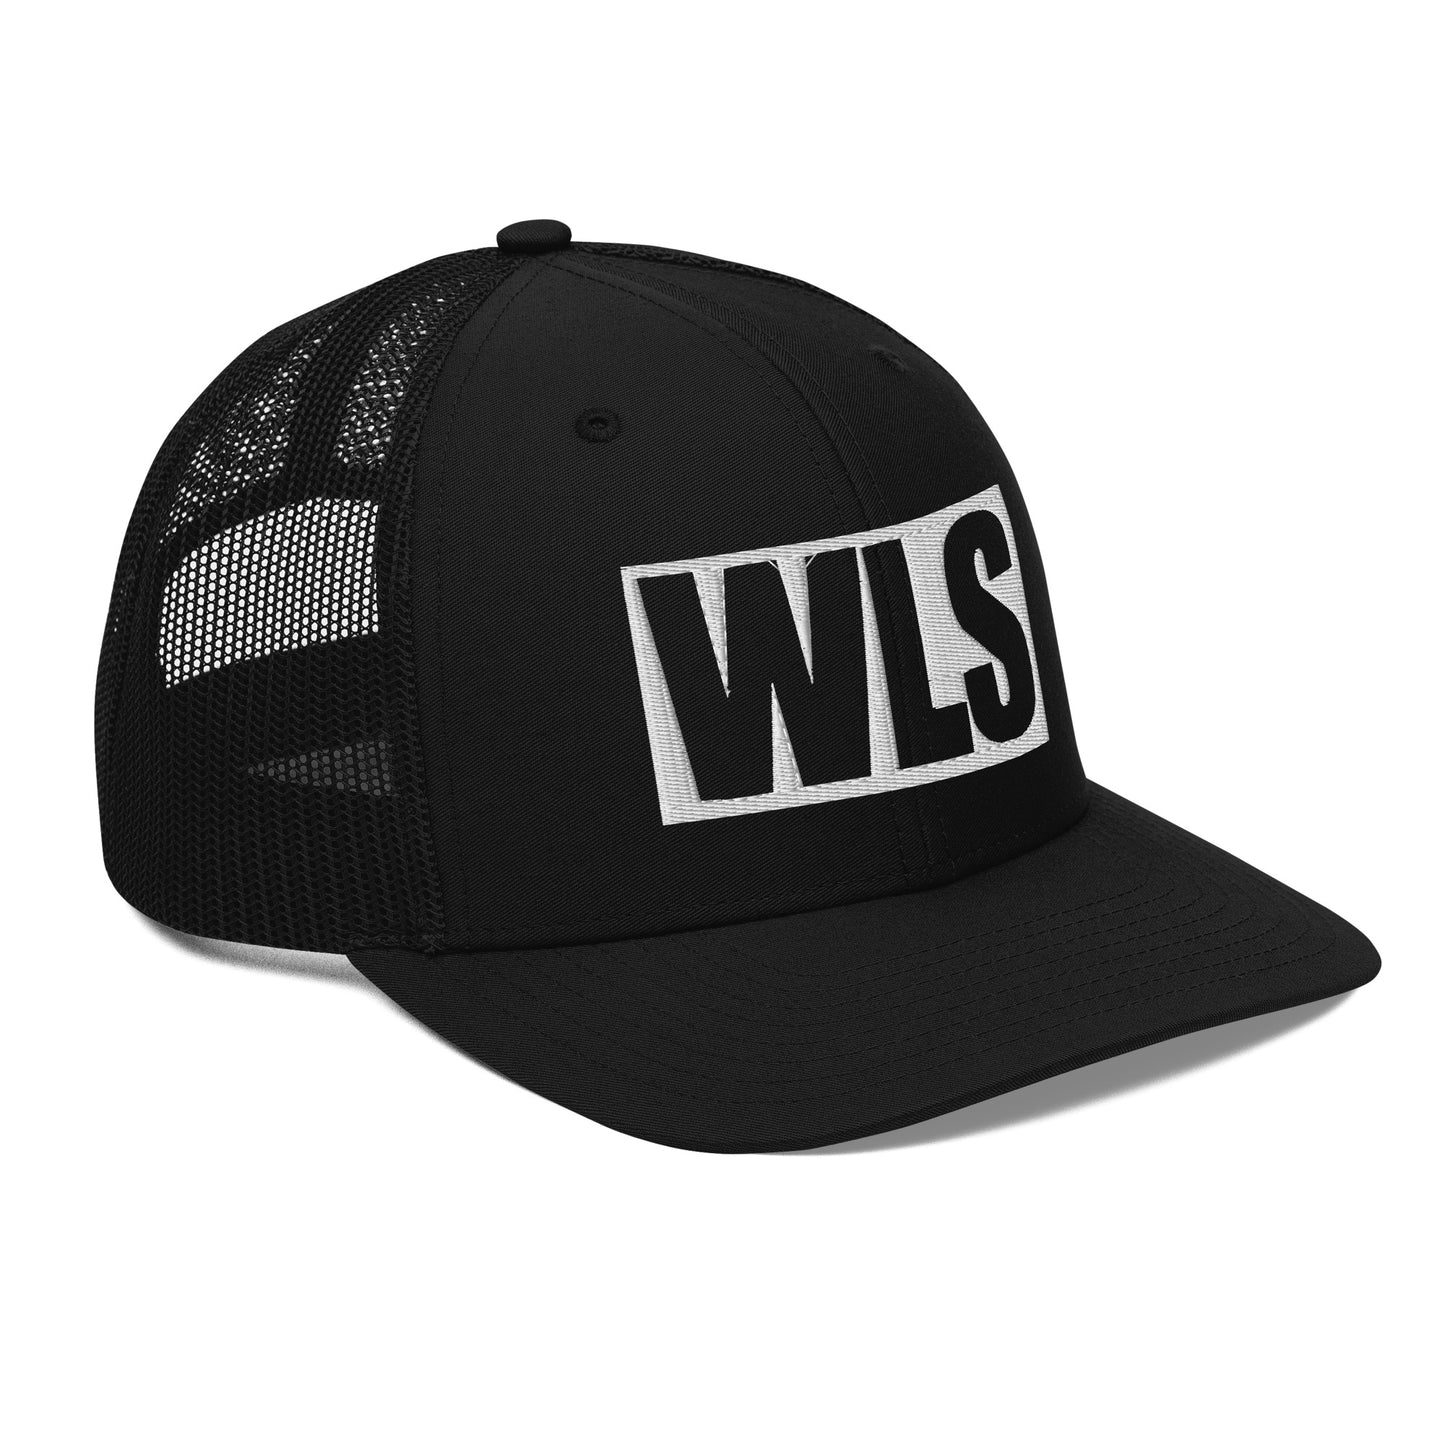 WLS Trucker Cap